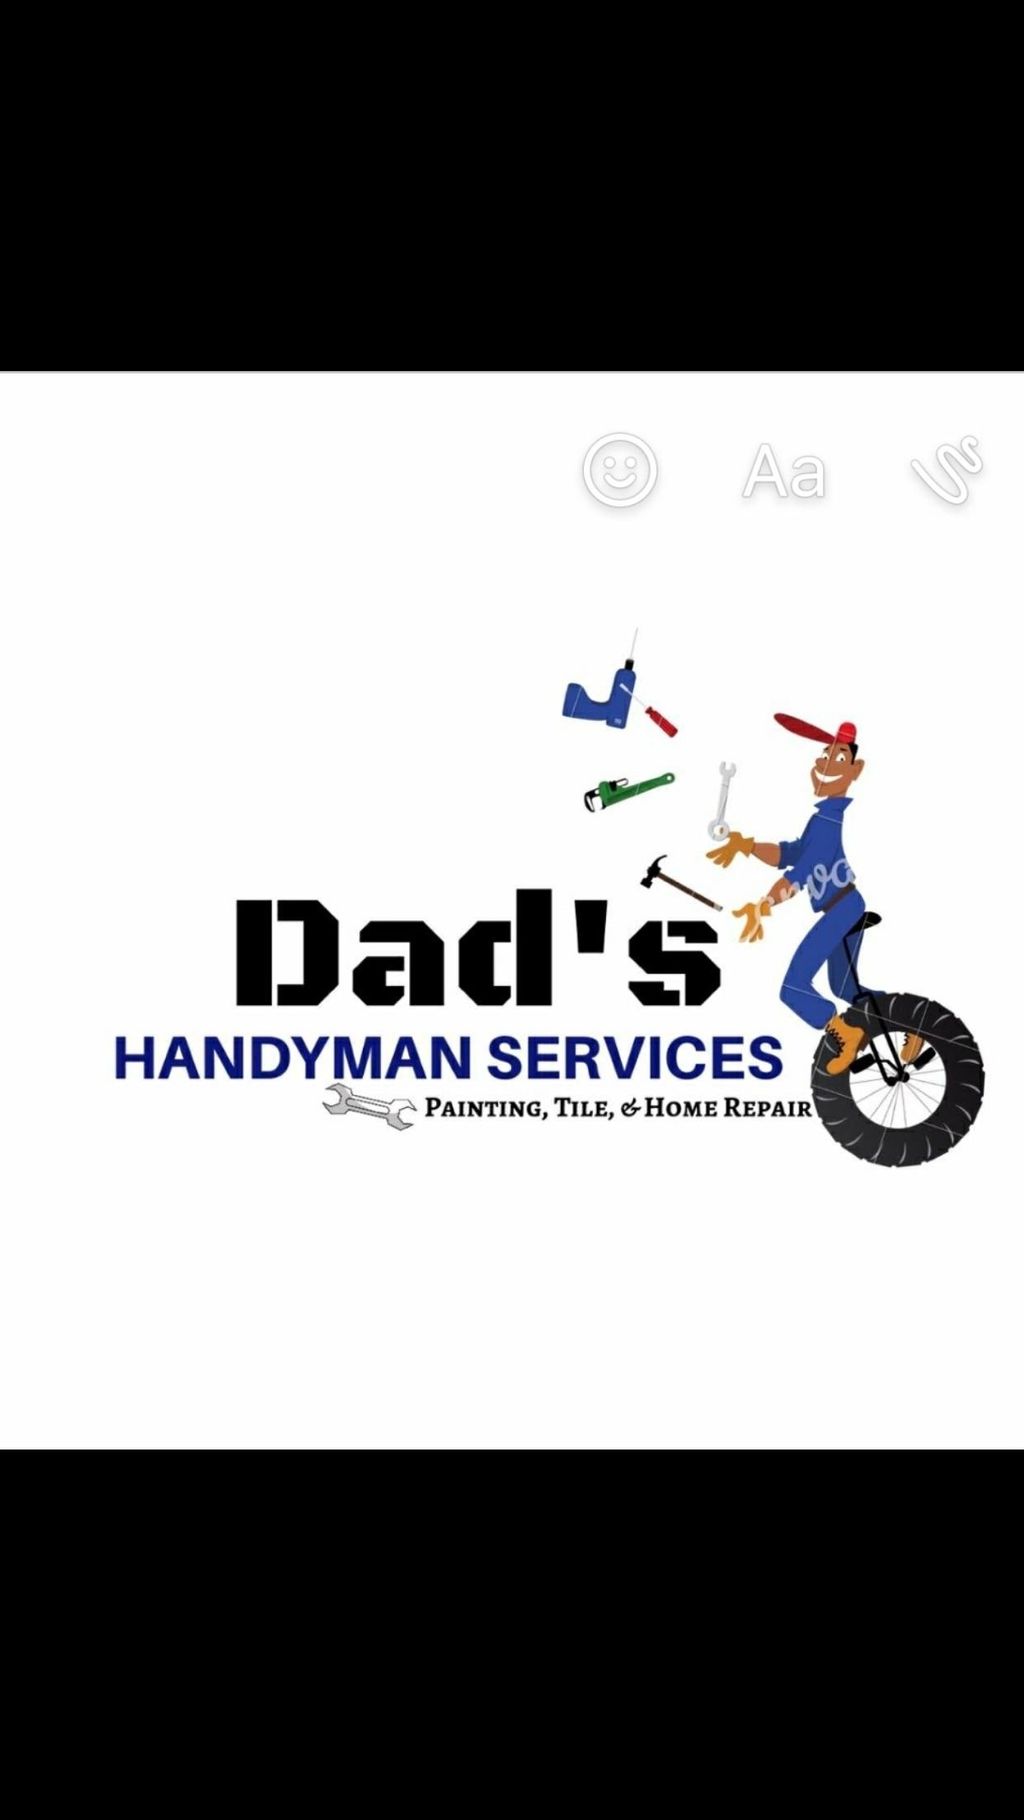 Dad's Handyman Services